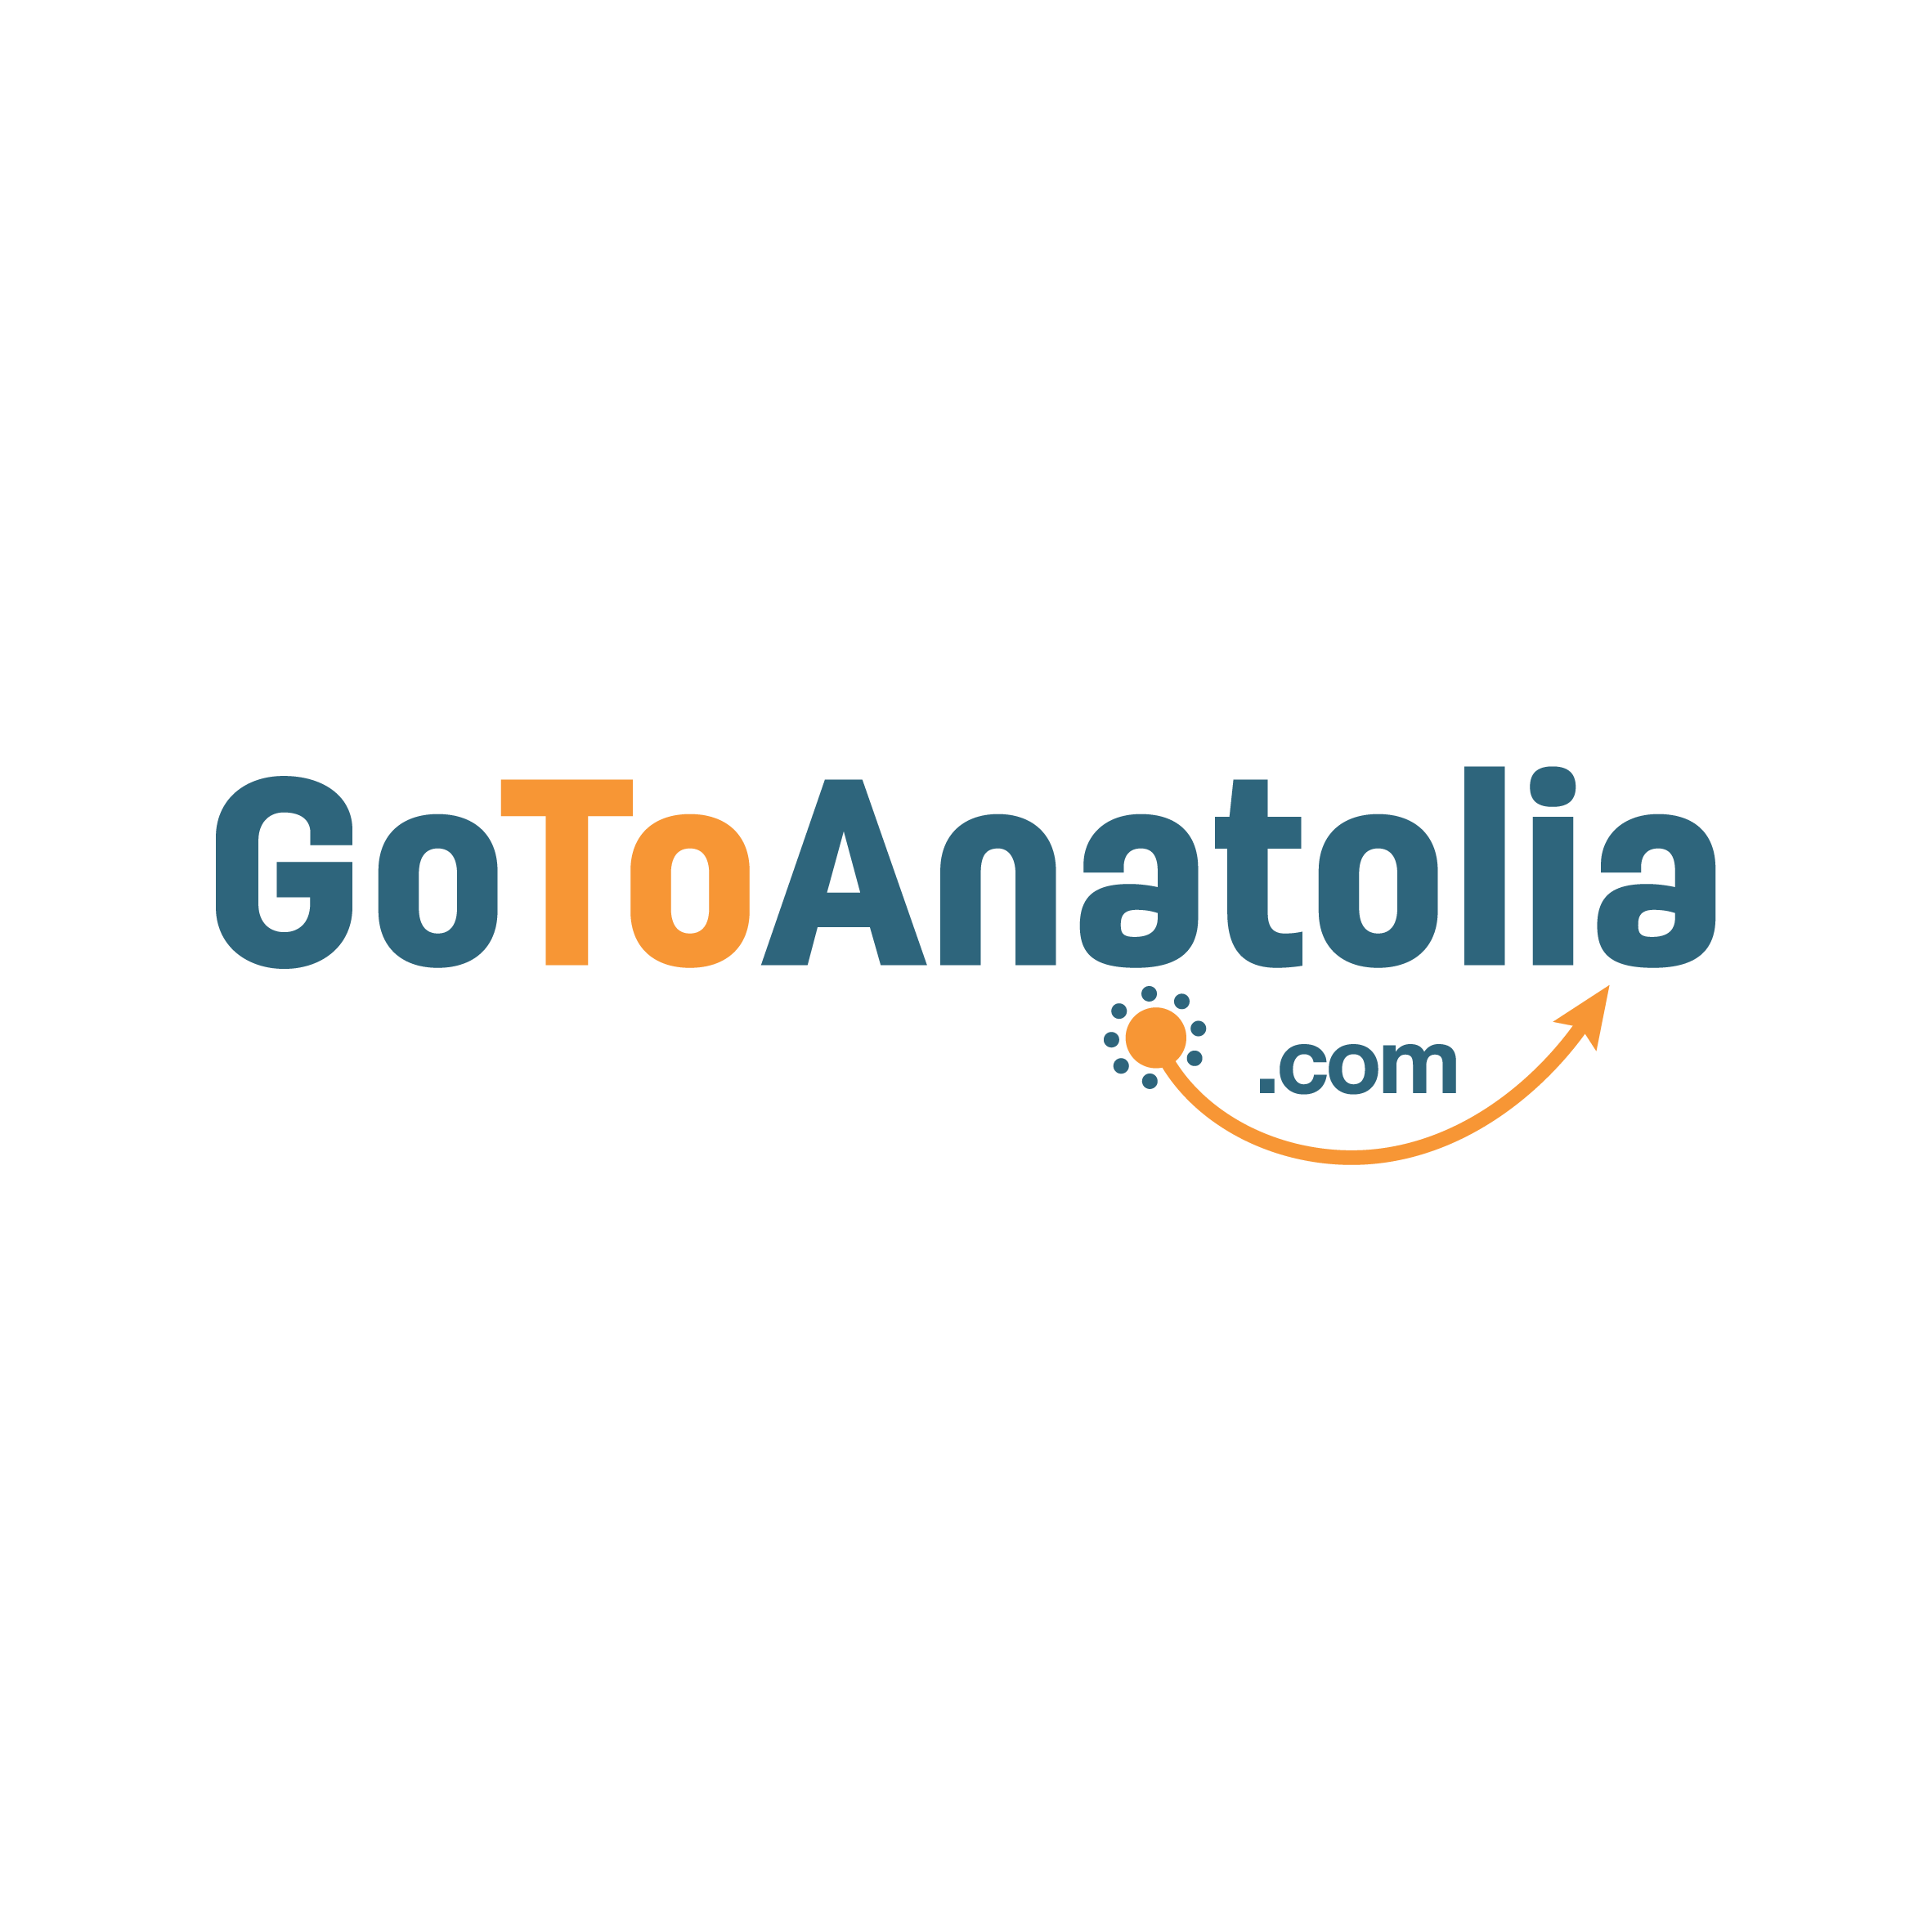 Gotoanatolia.com Logo